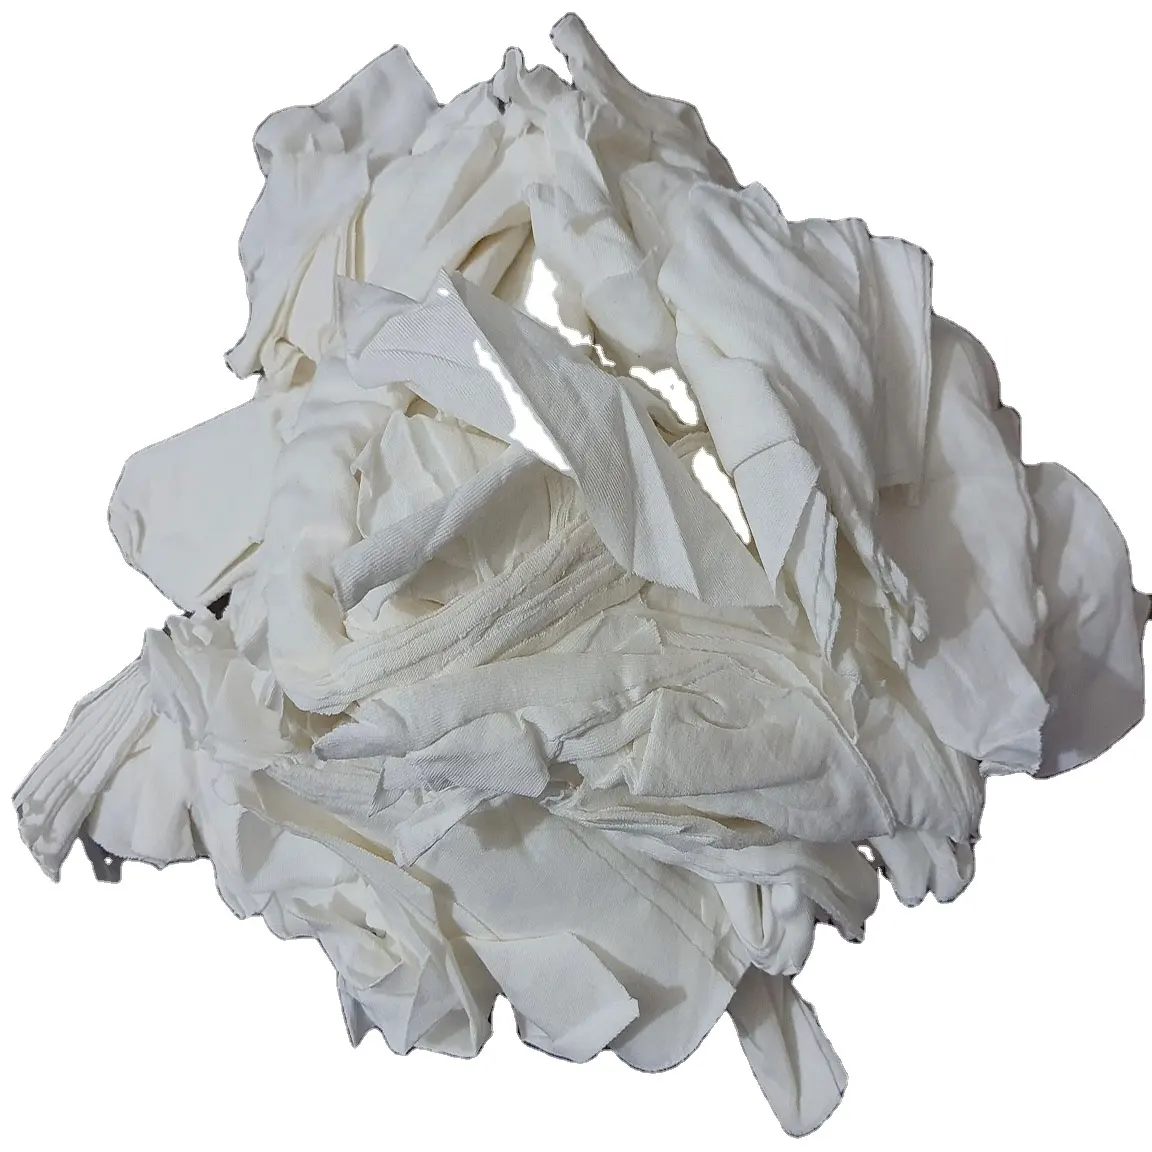 ของผ้าฝ้ายสีขาวถักผ้าขยะผ้าผ้าขี้ริ้วที่มีคุณภาพที่ดีที่สุดจากประเทศบังคลาเทศรีไซเคิลผ้าเสีย